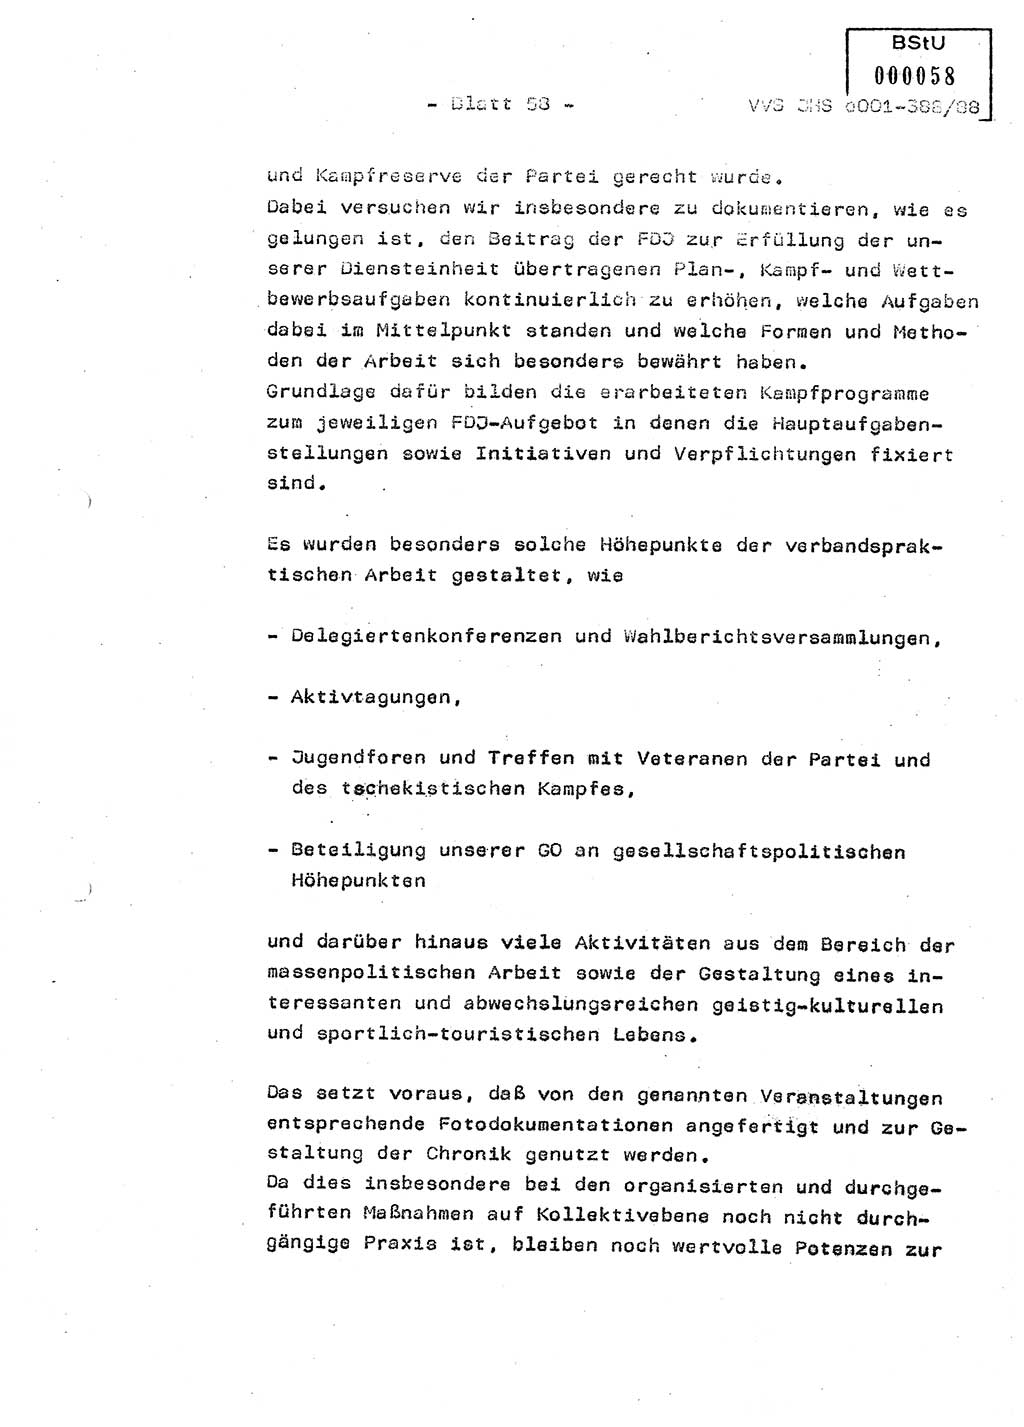 Diplomarbeit Hauptmann Heinz Brixel (Abt. ⅩⅣ), Ministerium für Staatssicherheit (MfS) [Deutsche Demokratische Republik (DDR)], Juristische Hochschule (JHS), Vertrauliche Verschlußsache (VVS) o001-388/88, Potsdam 1988, Blatt 58 (Dipl.-Arb. MfS DDR JHS VVS o001-388/88 1988, Bl. 58)